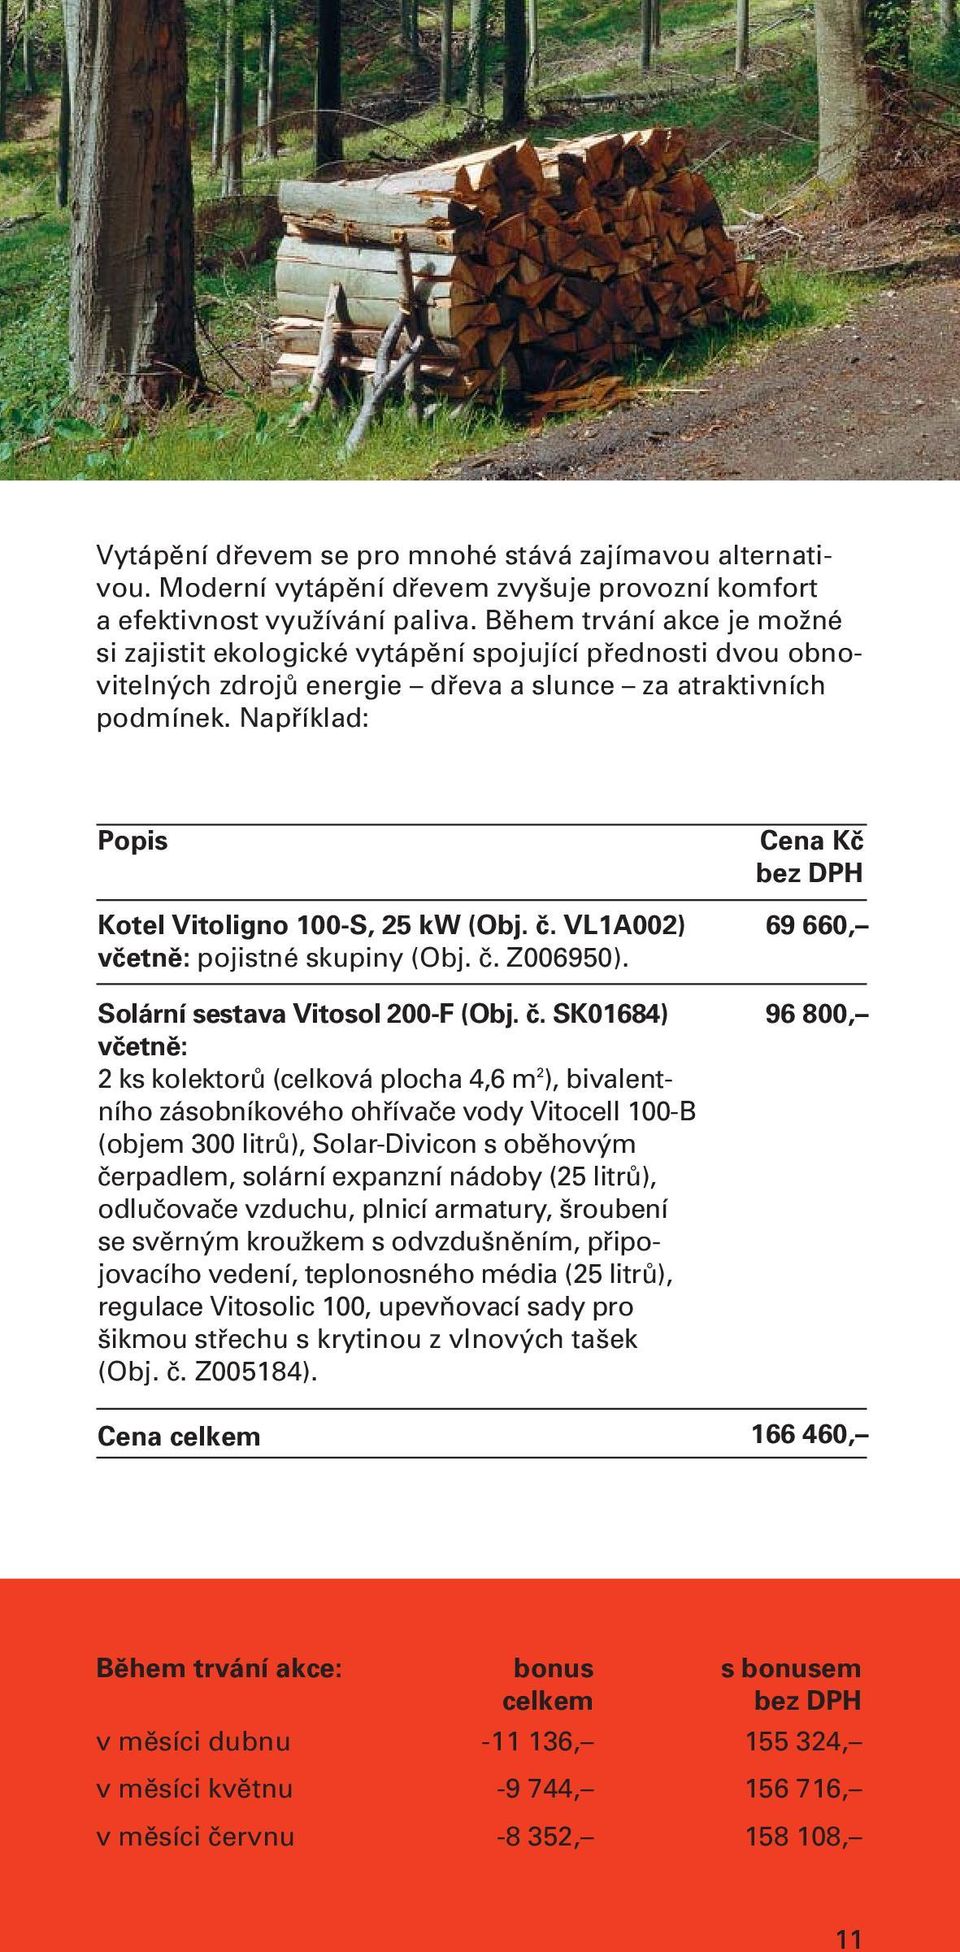 Například: Popis Kotel Vitoligno 100-S, 25 kw (Obj. č.